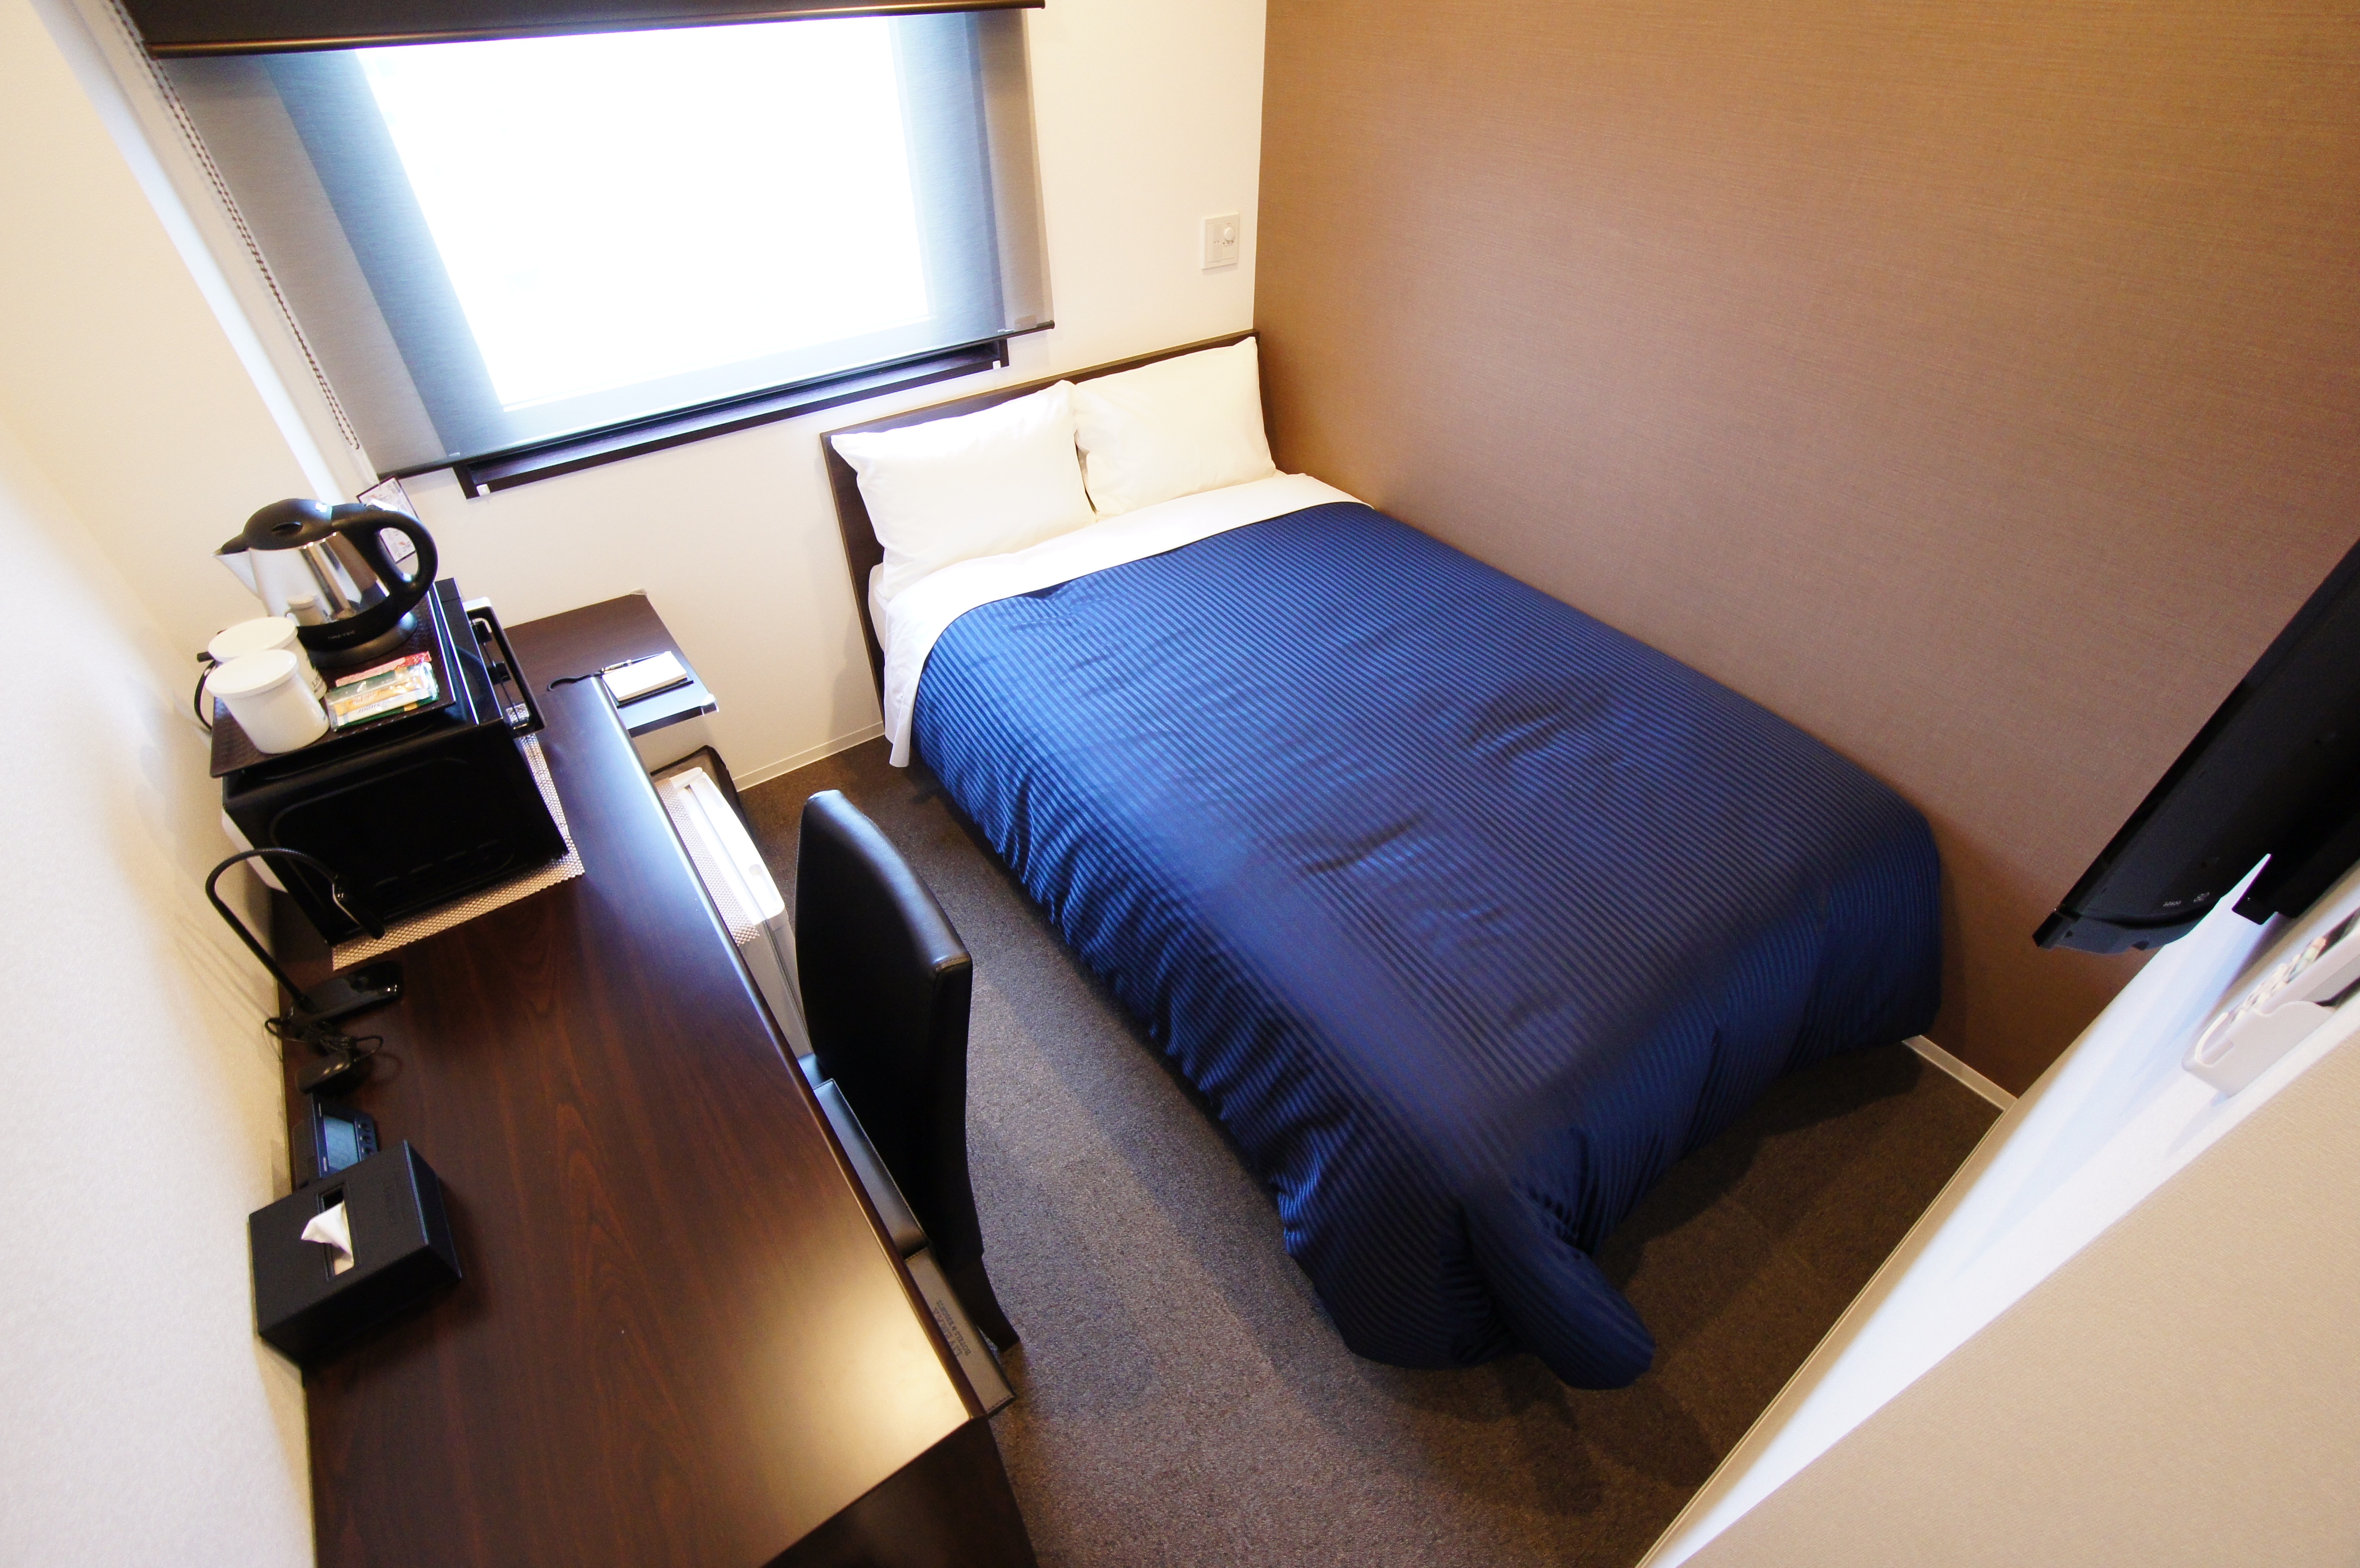 [ห้องเดี่ยว] ซิมมอนส์กึ่งเตียงคู่ถูกนำมาใช้